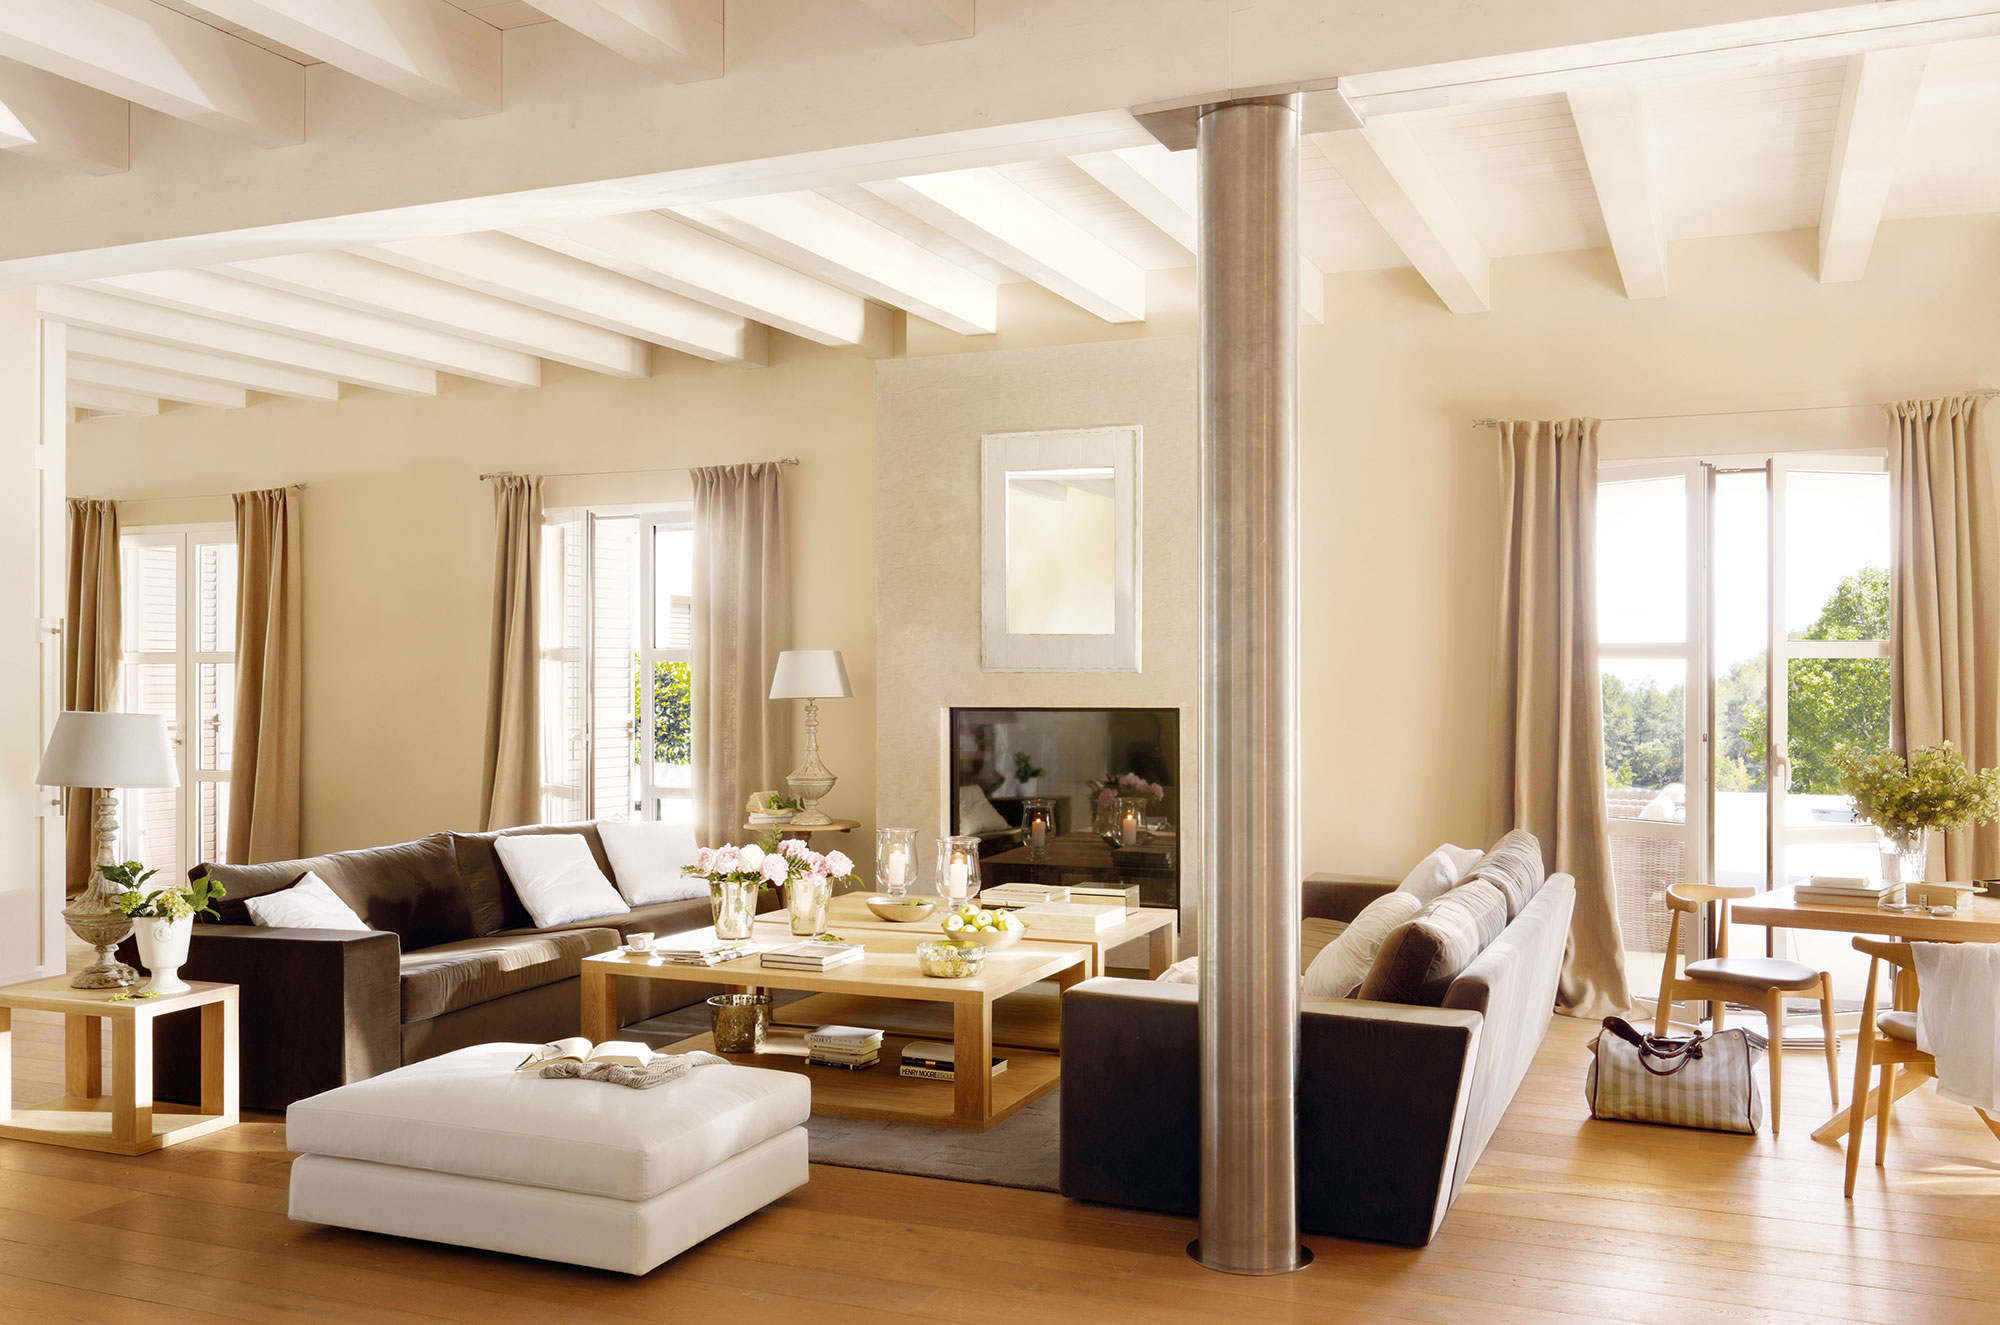 Salón amplio con vigas de madera, sofás modernos y distribución simétrica.